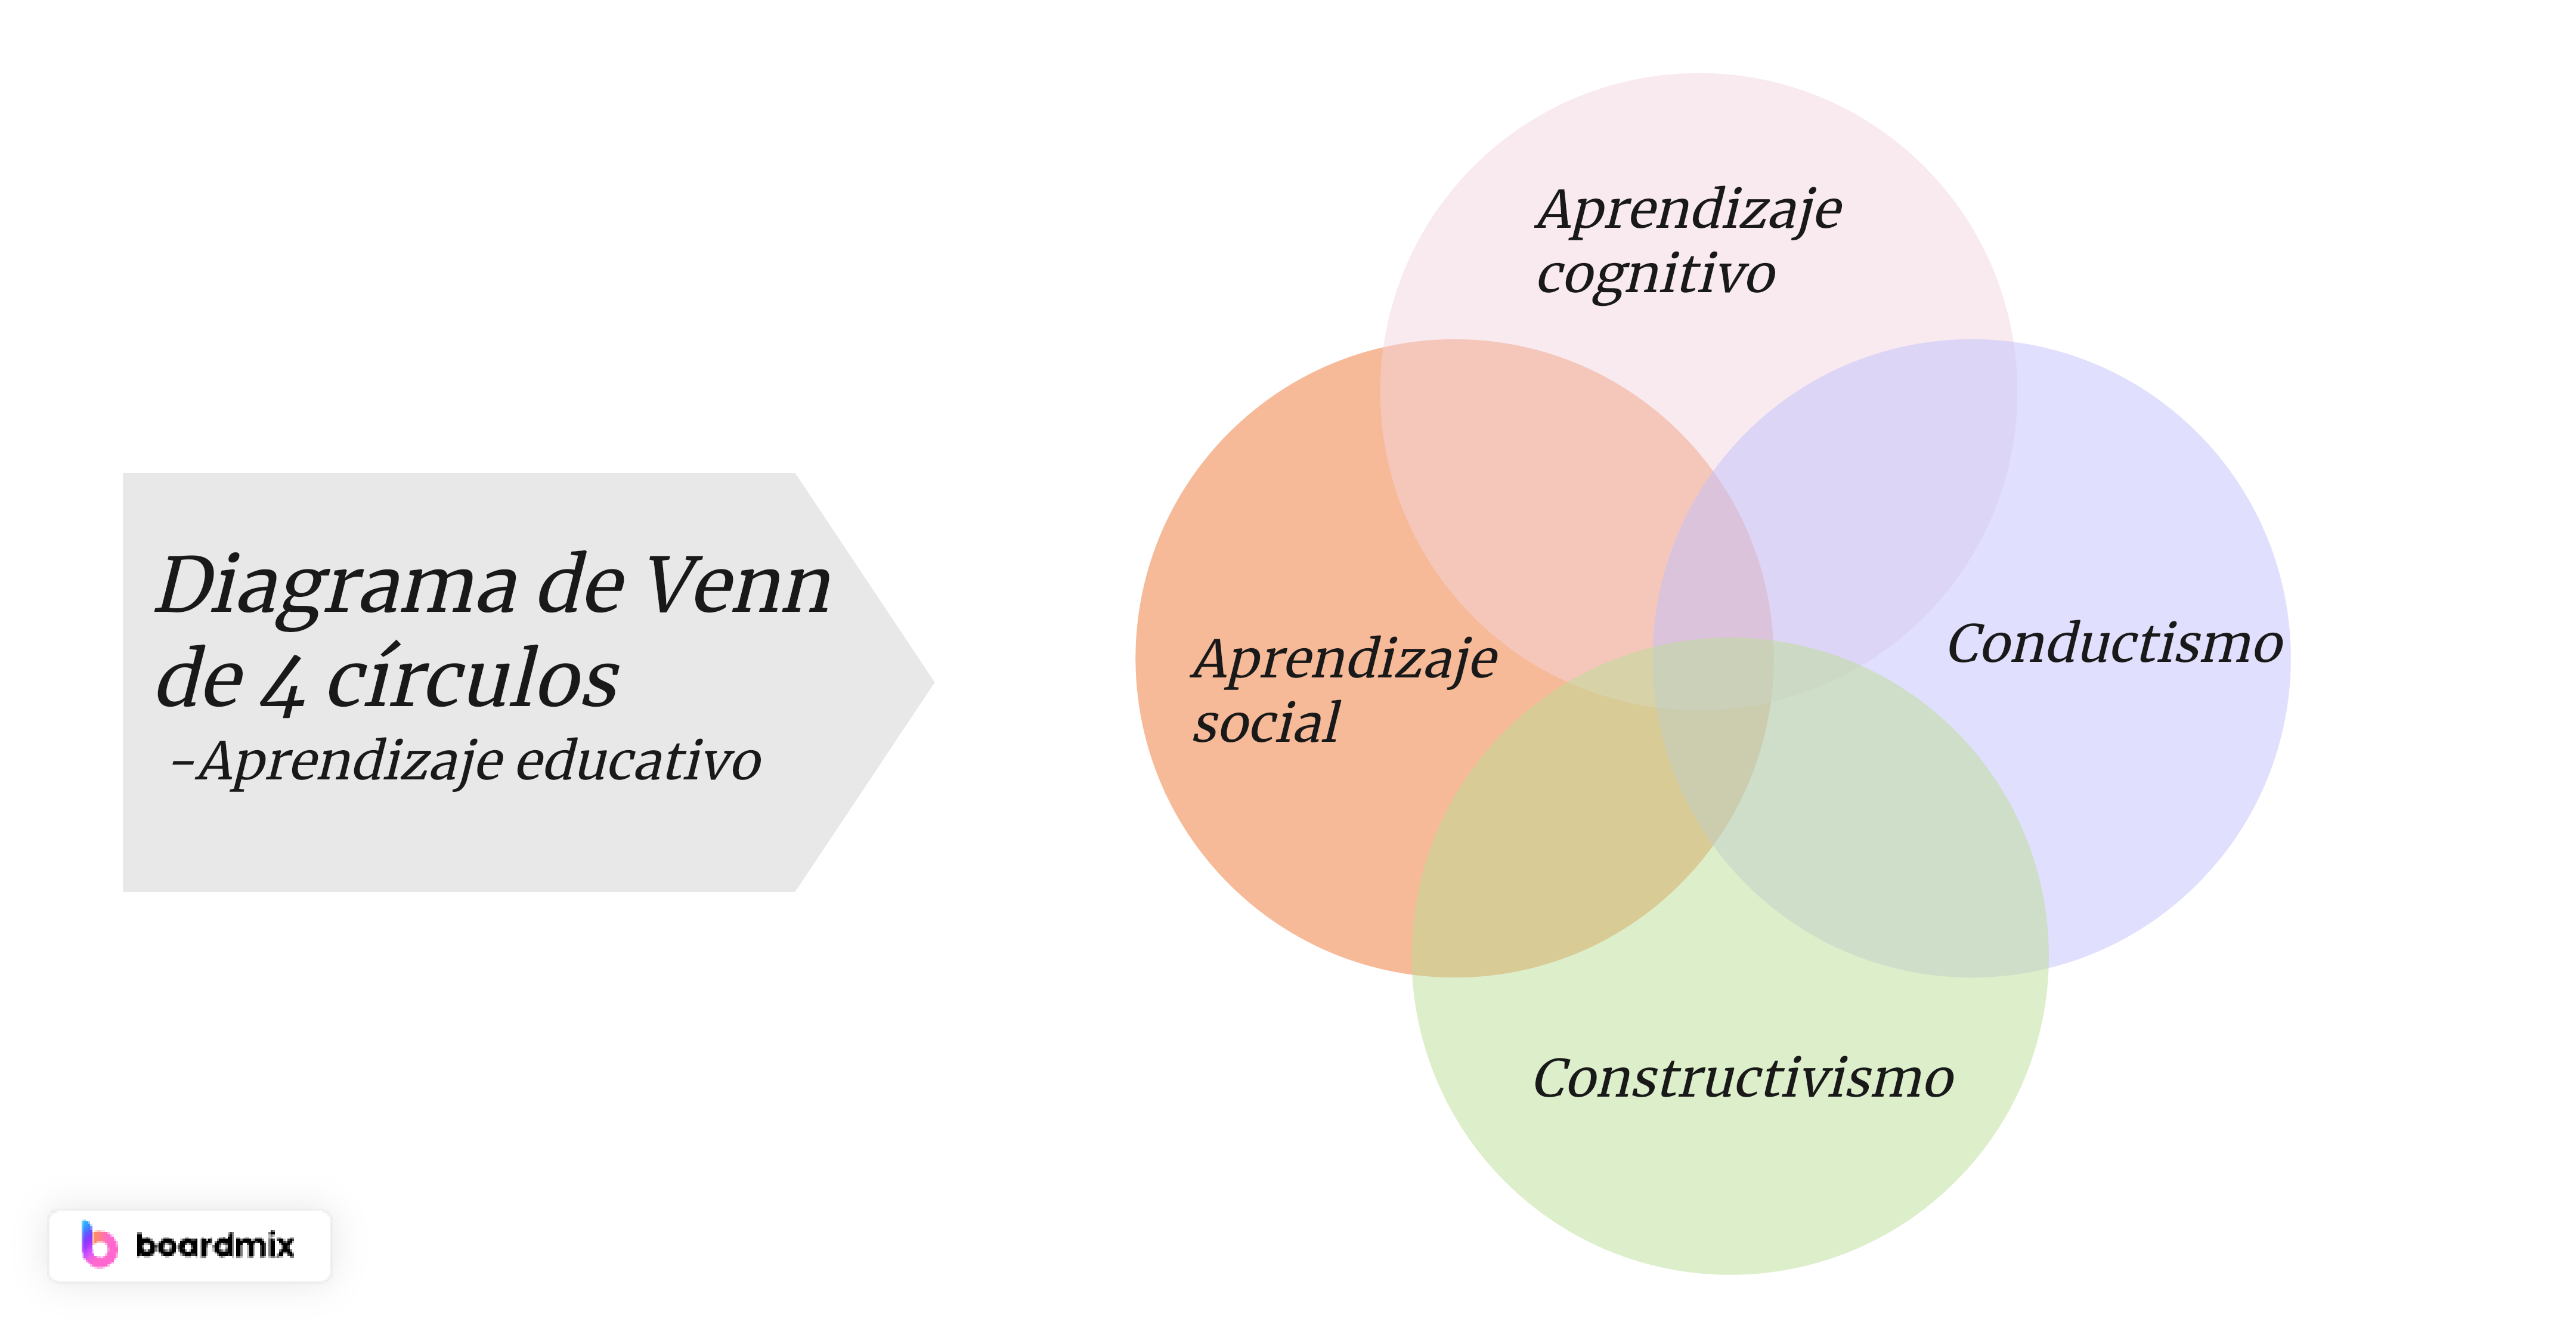 Diagrama de Venn de 4 círculos en el aprendizaje educativo